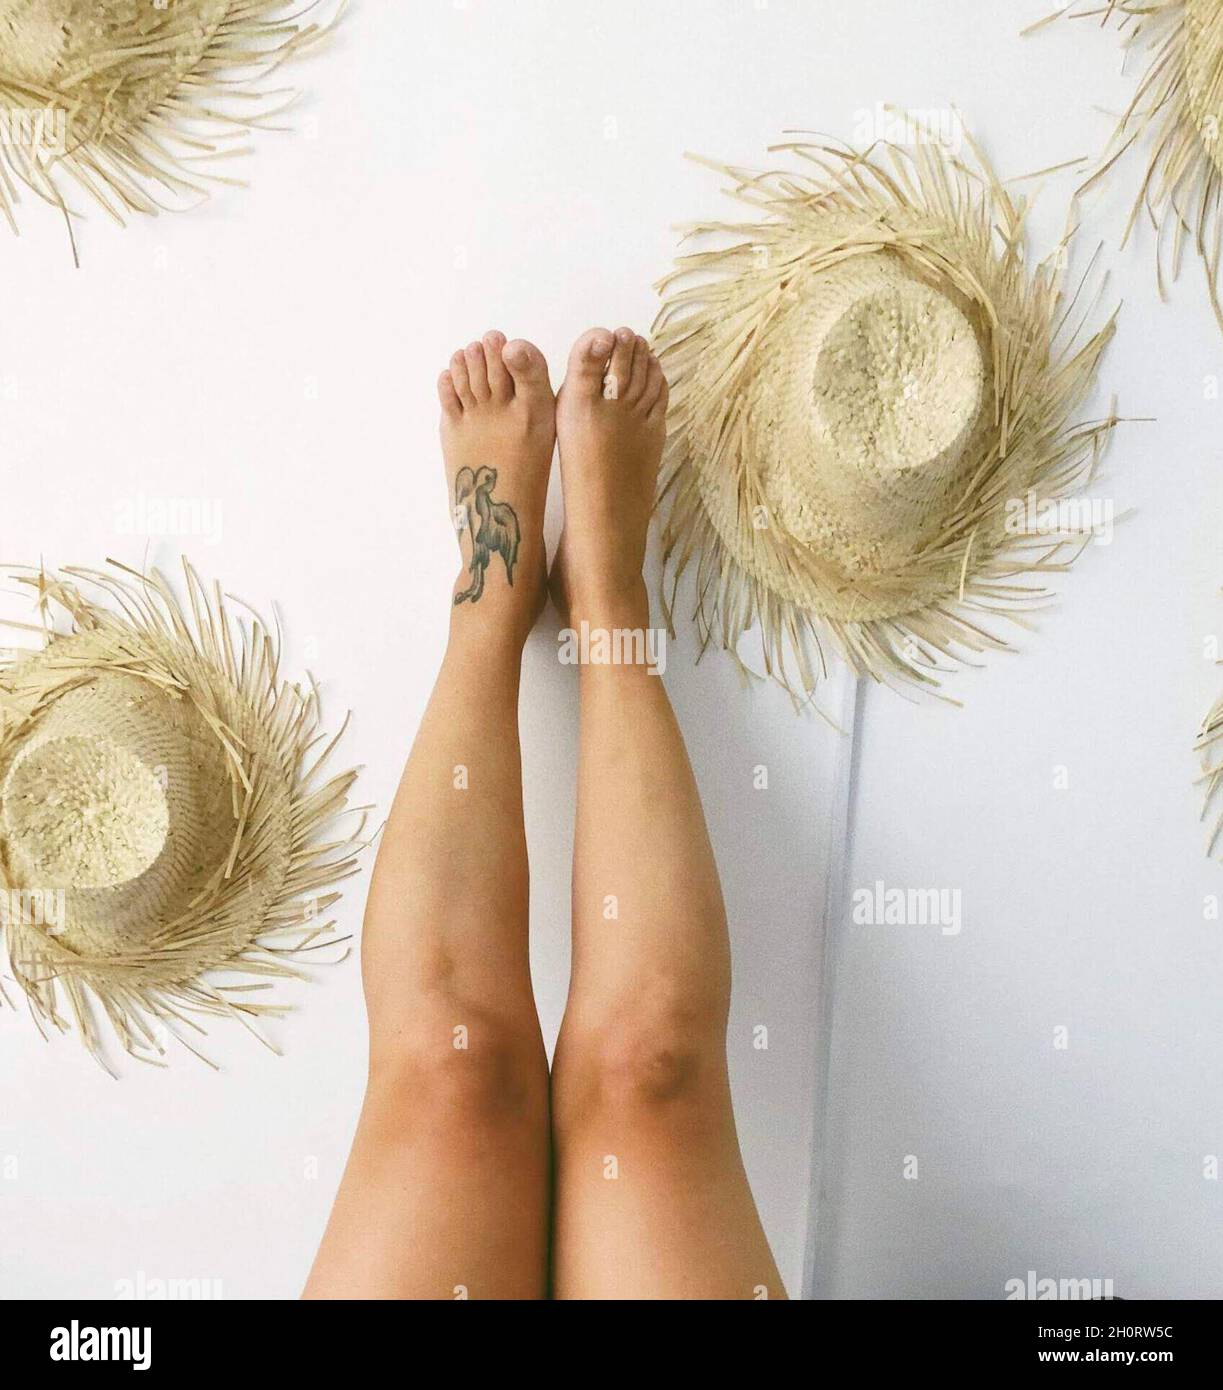 Les jambes de la femme contre un mur décoré de chapeaux de paille, Philippines Banque D'Images